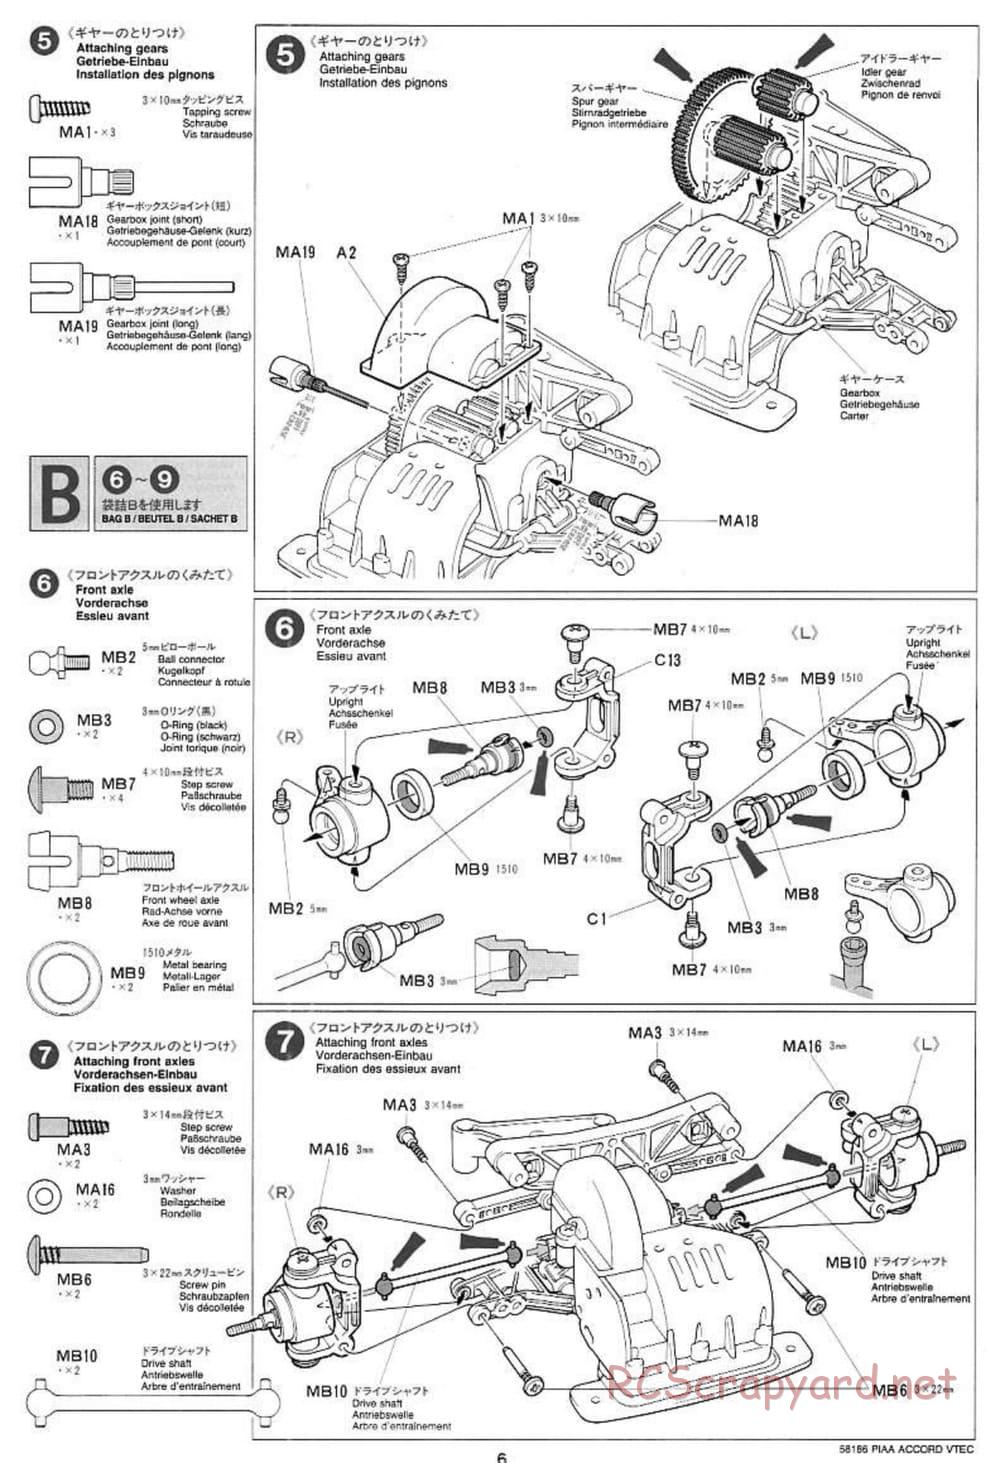 Tamiya - PIAA Accord VTEC - FF-01 Chassis - Manual - Page 6